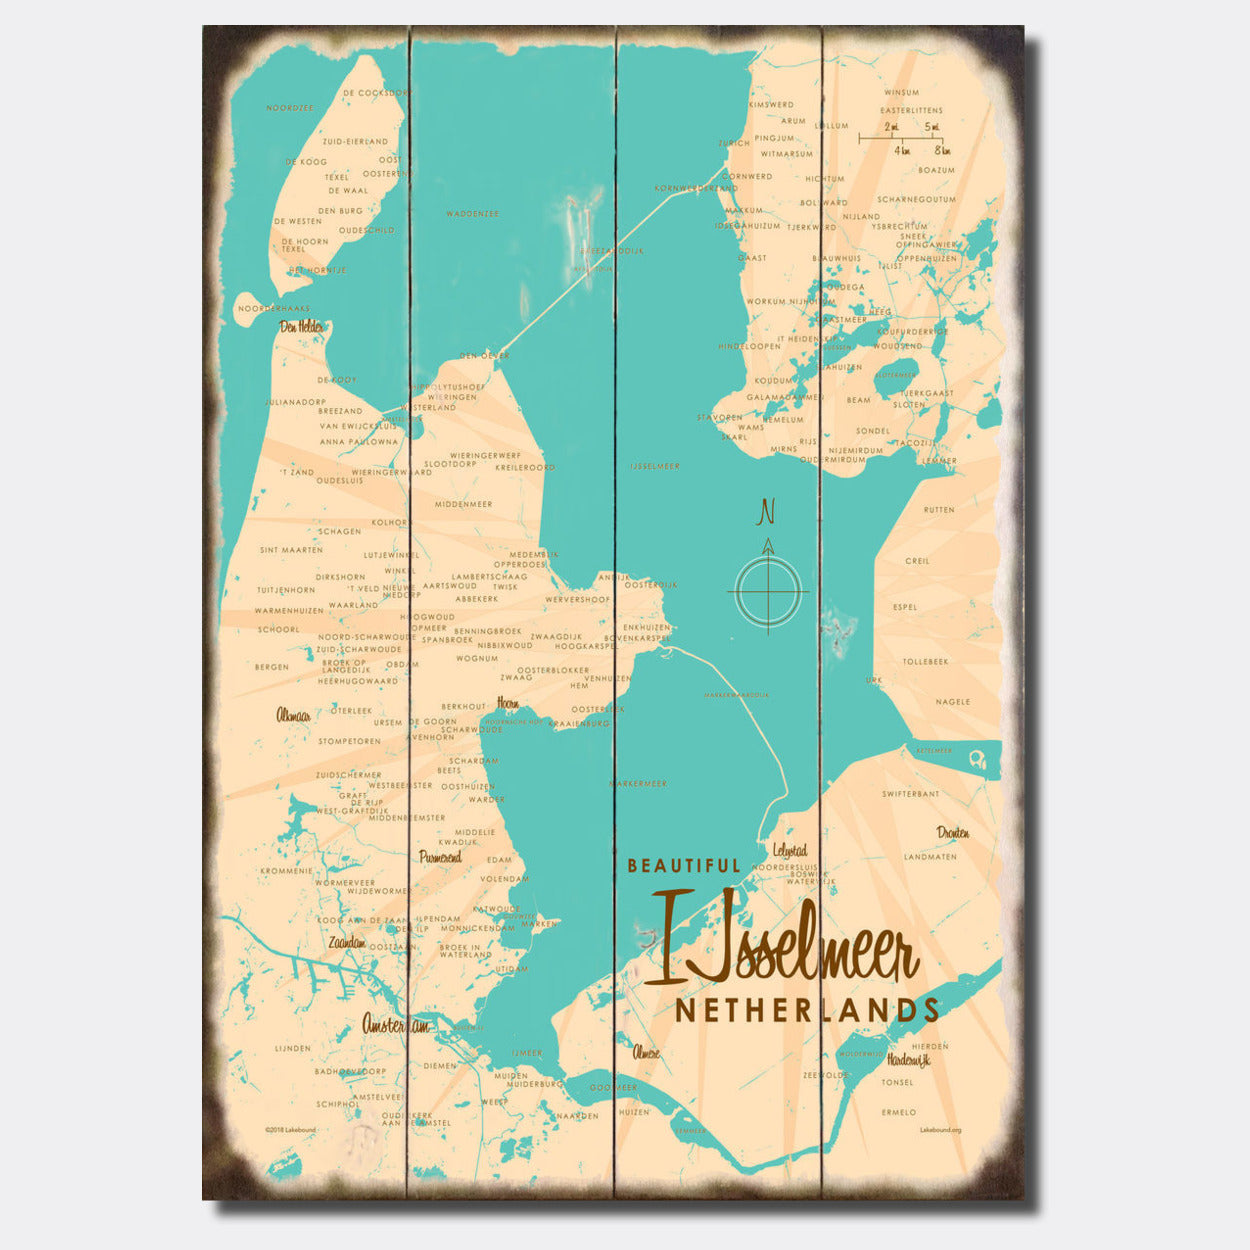 IJsselmeer Netherlands, Sign Map Art